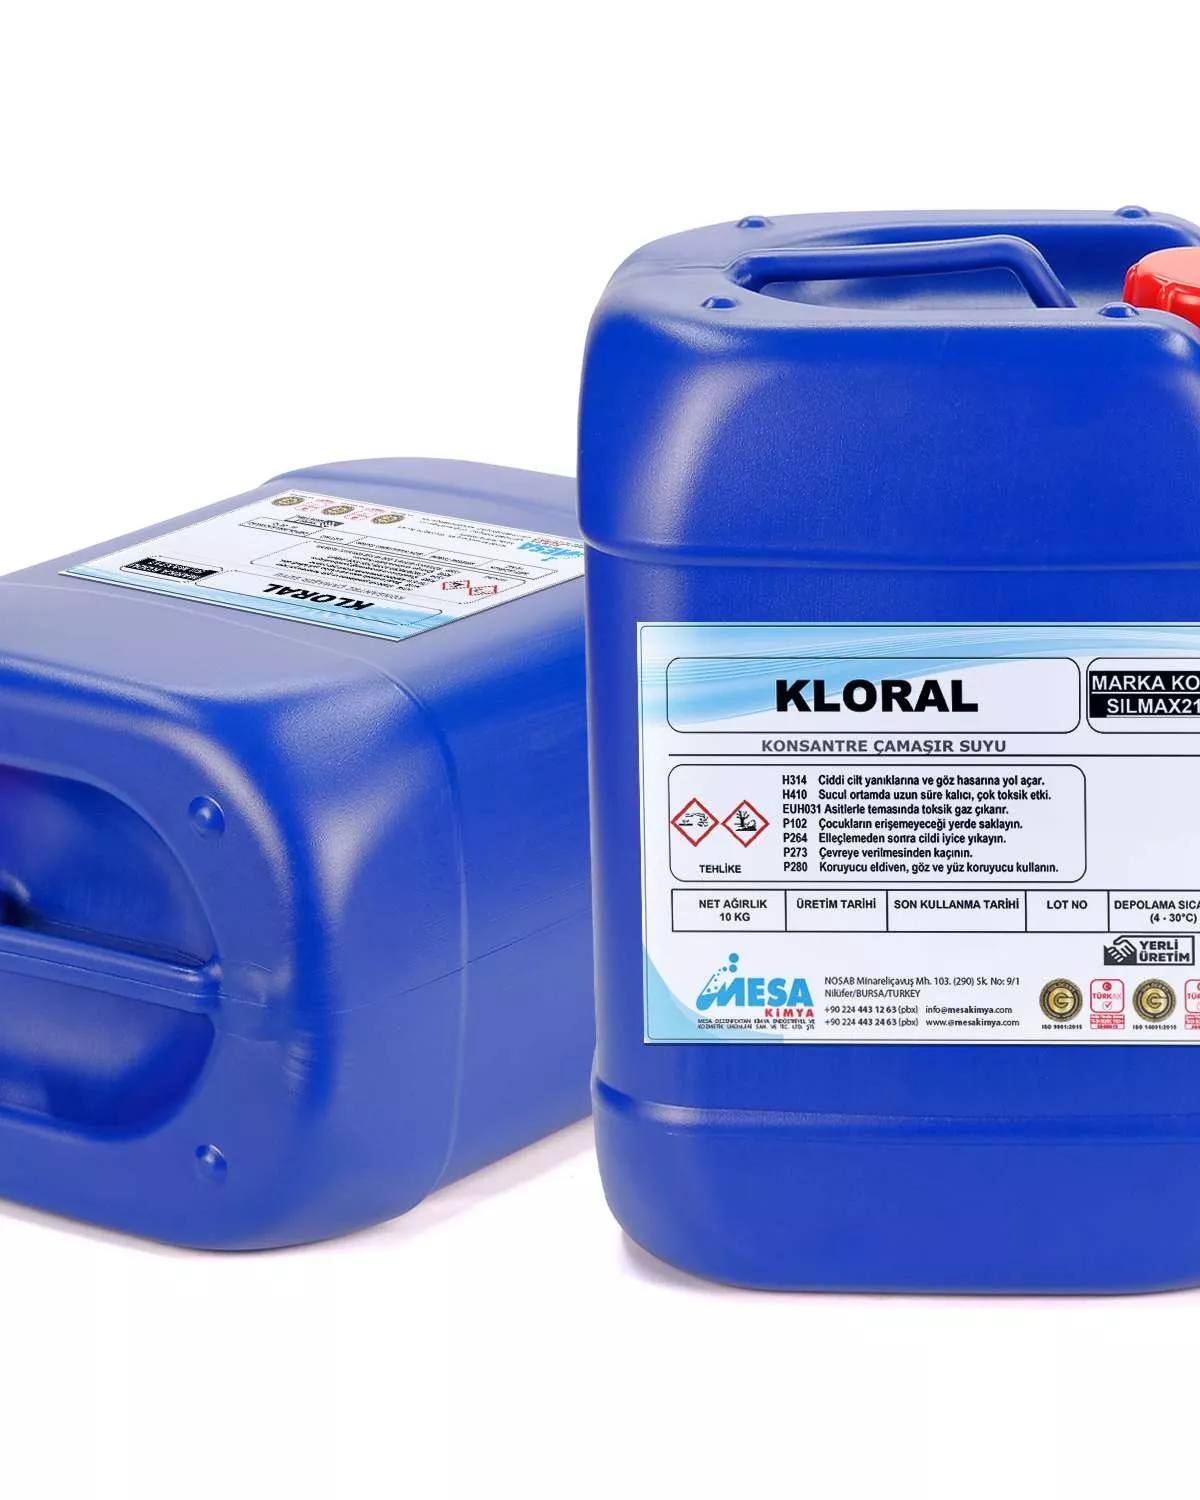 Klor Bazlı Sıvı Ağartıcı çamaşır suyu KLORAL fiyatları